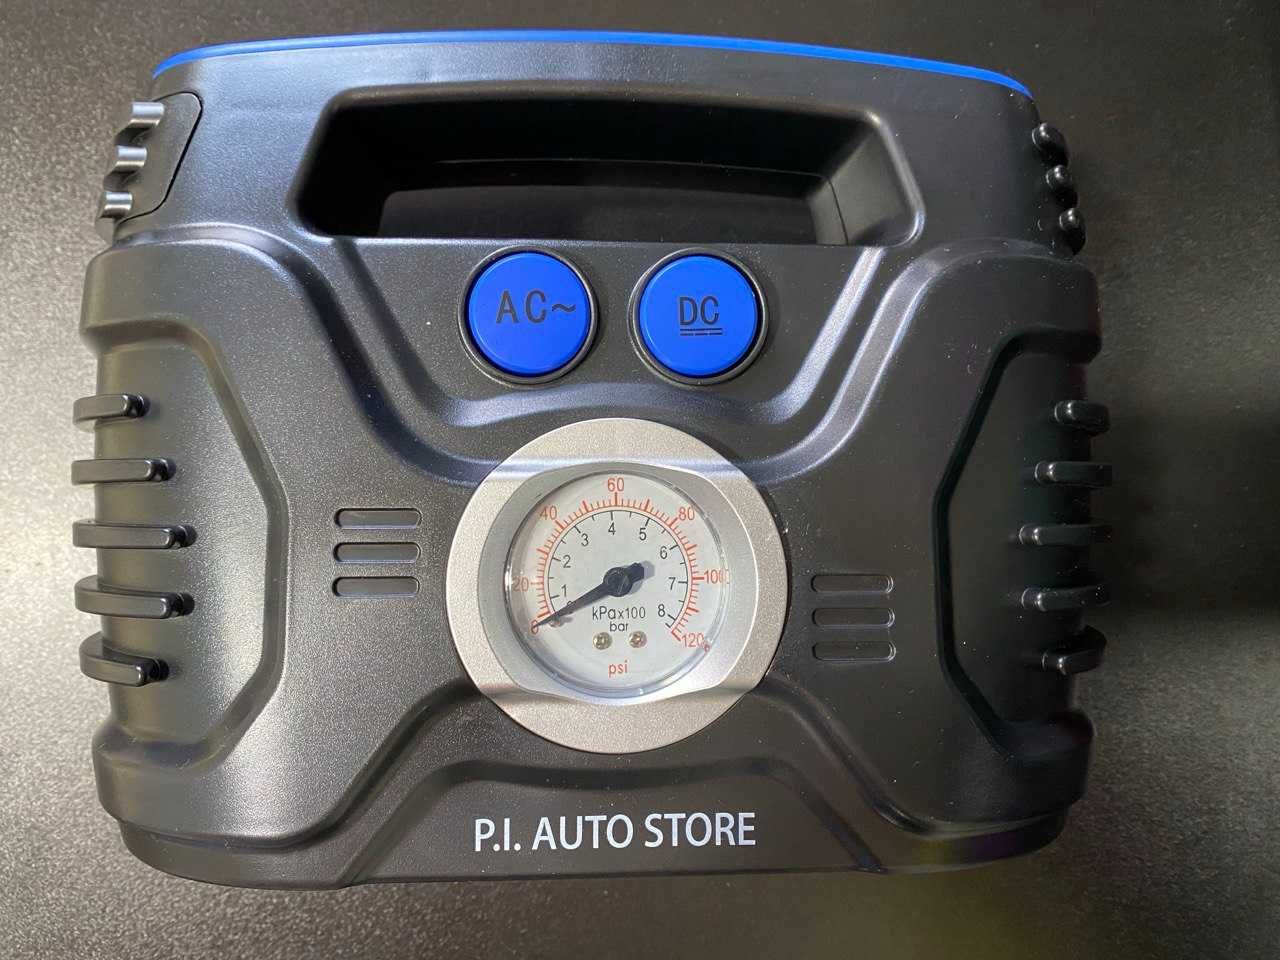 Vand compresor portabil Dual-Power P.I. Auto Store